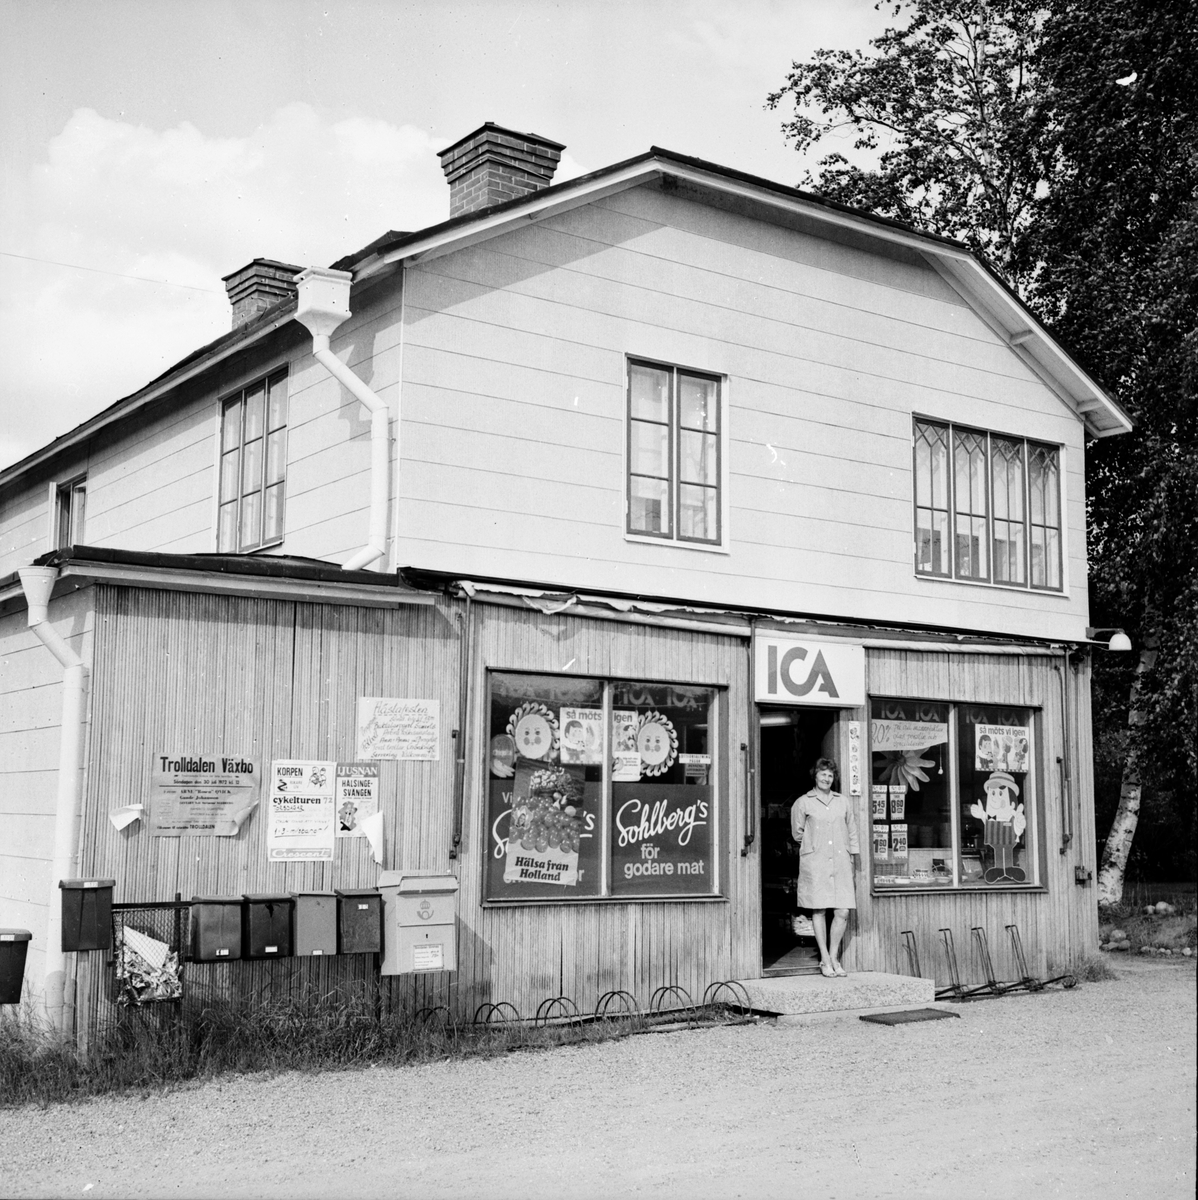 Affären i Flästa upphör.
September 1972